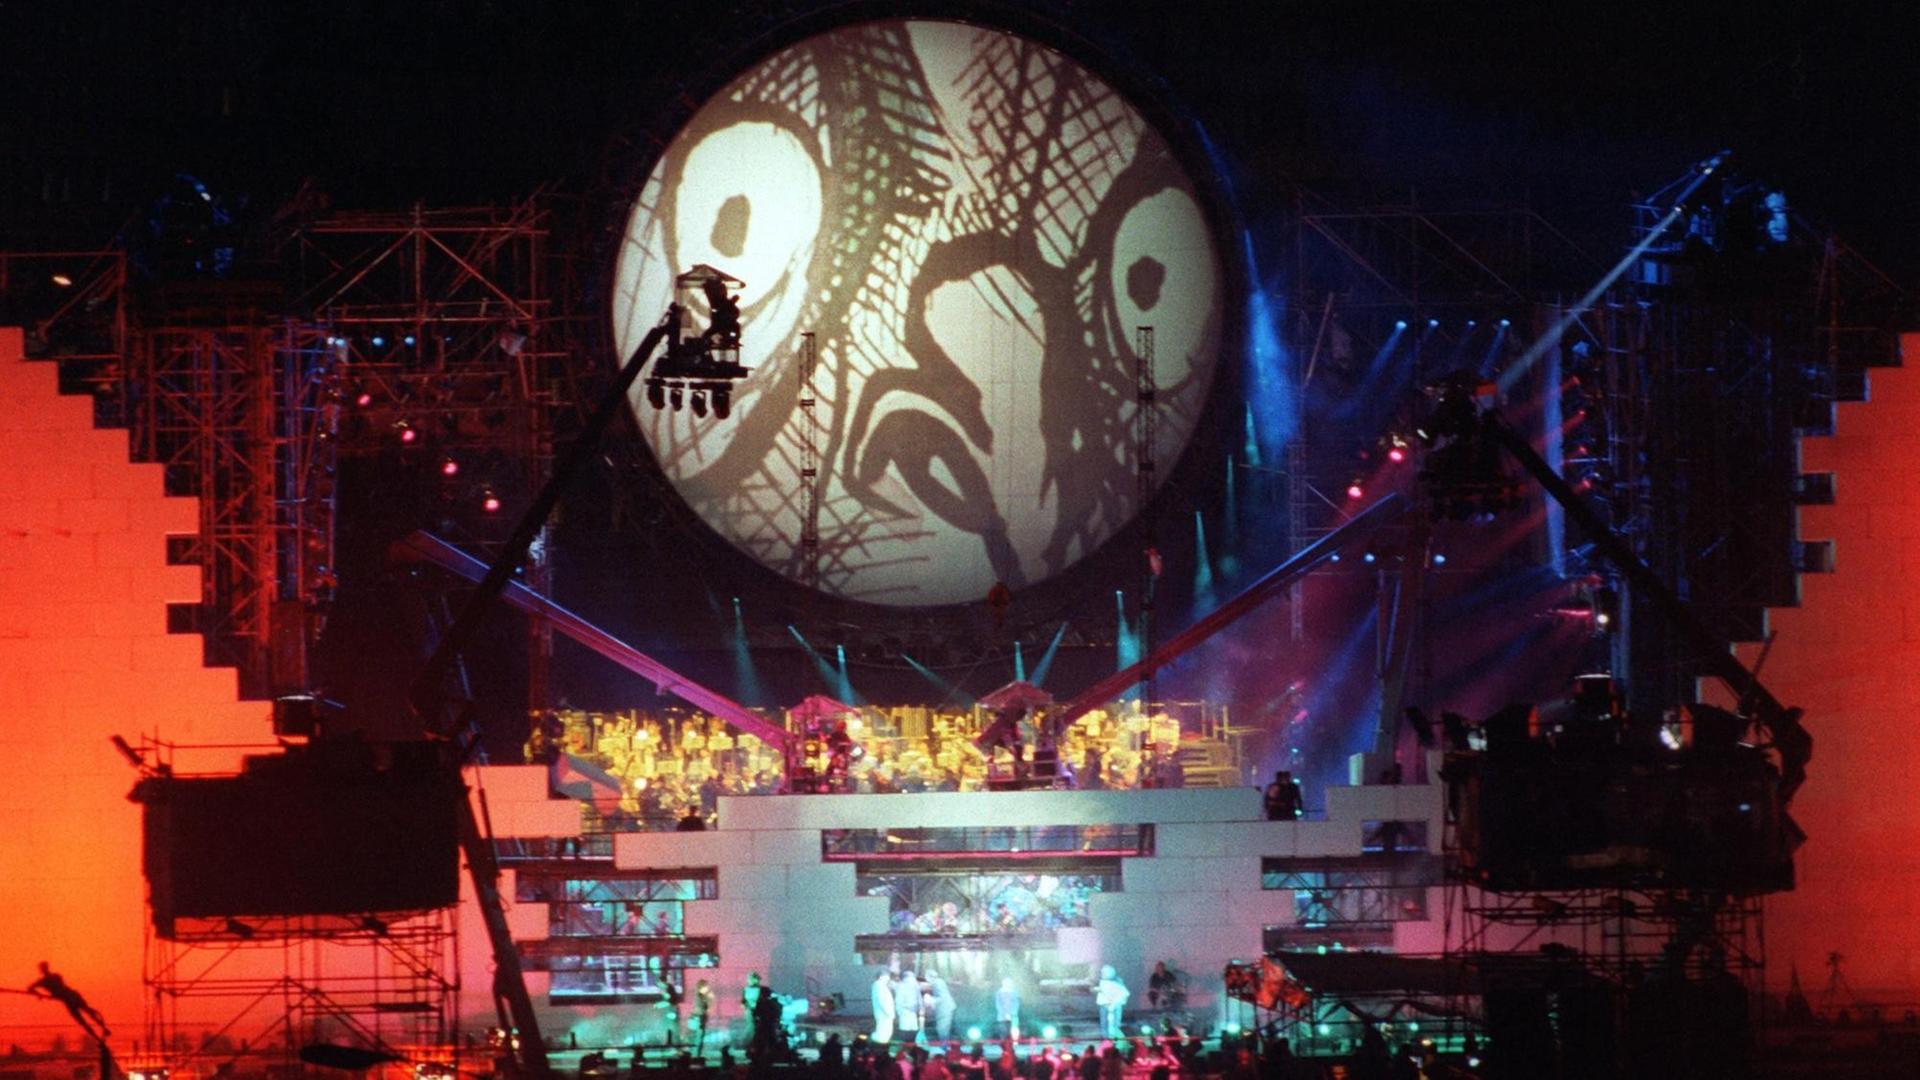 Der gigantische Bühnenaufbau zu "The Wall" 21.7.1990 auf dem Potsdamer Platz in Berlin